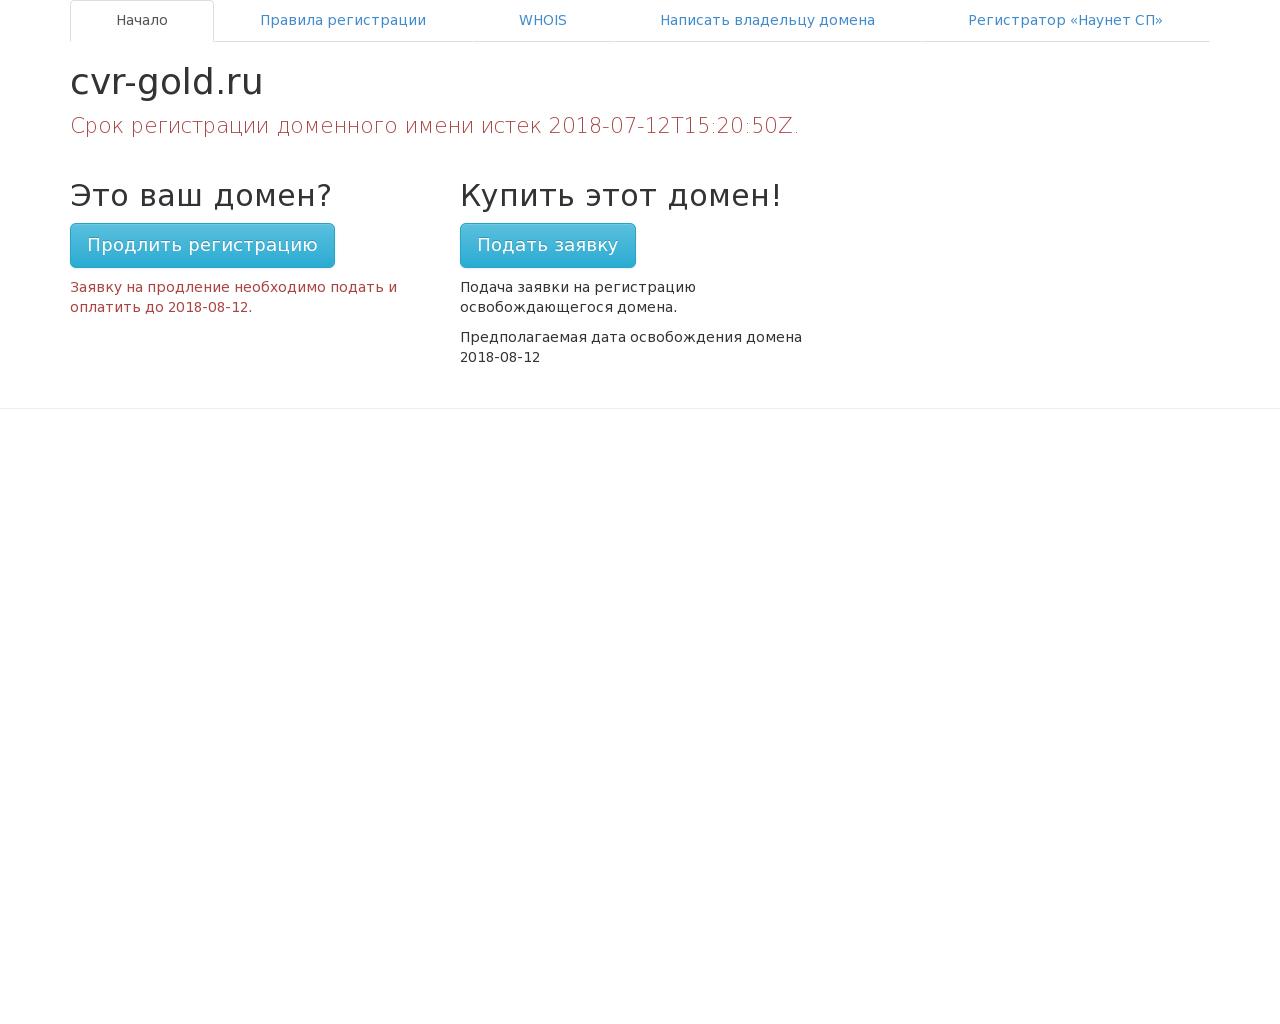 Изображение сайта cvr-gold.ru в разрешении 1280x1024